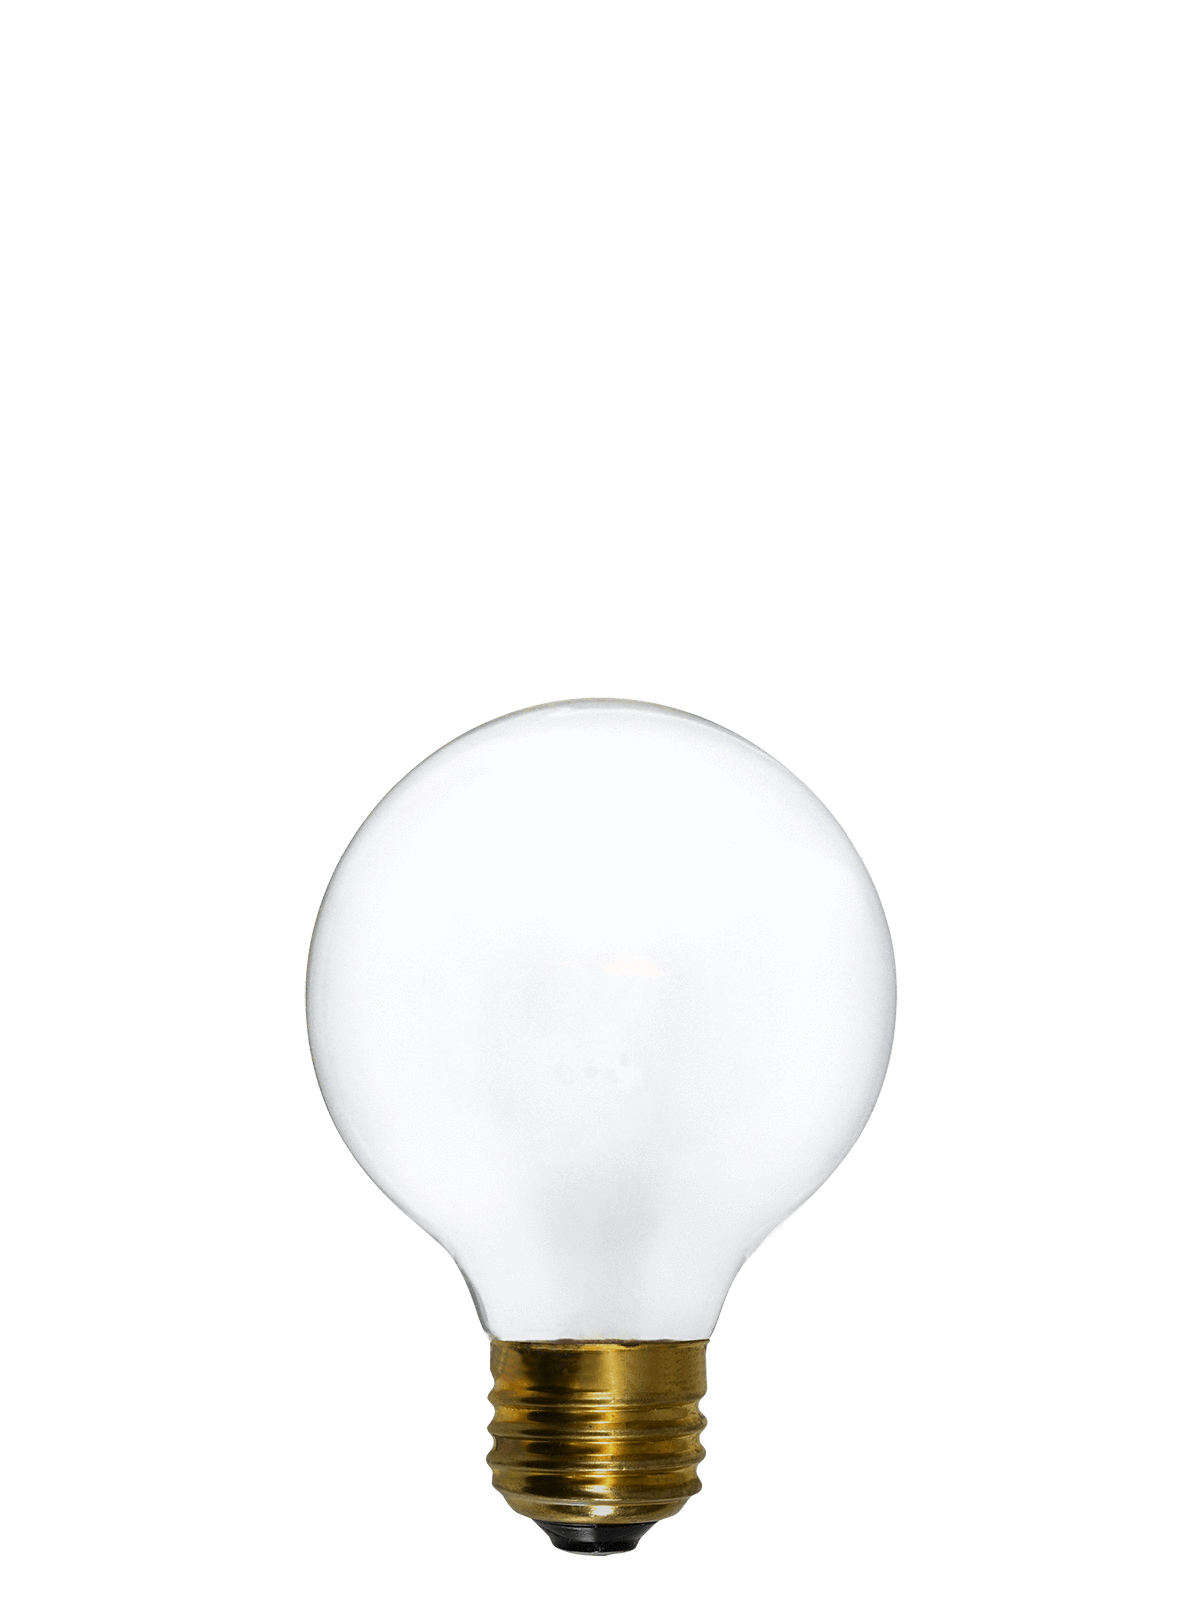 Bulb: LED - White 3" Globe Hangout Lighting 